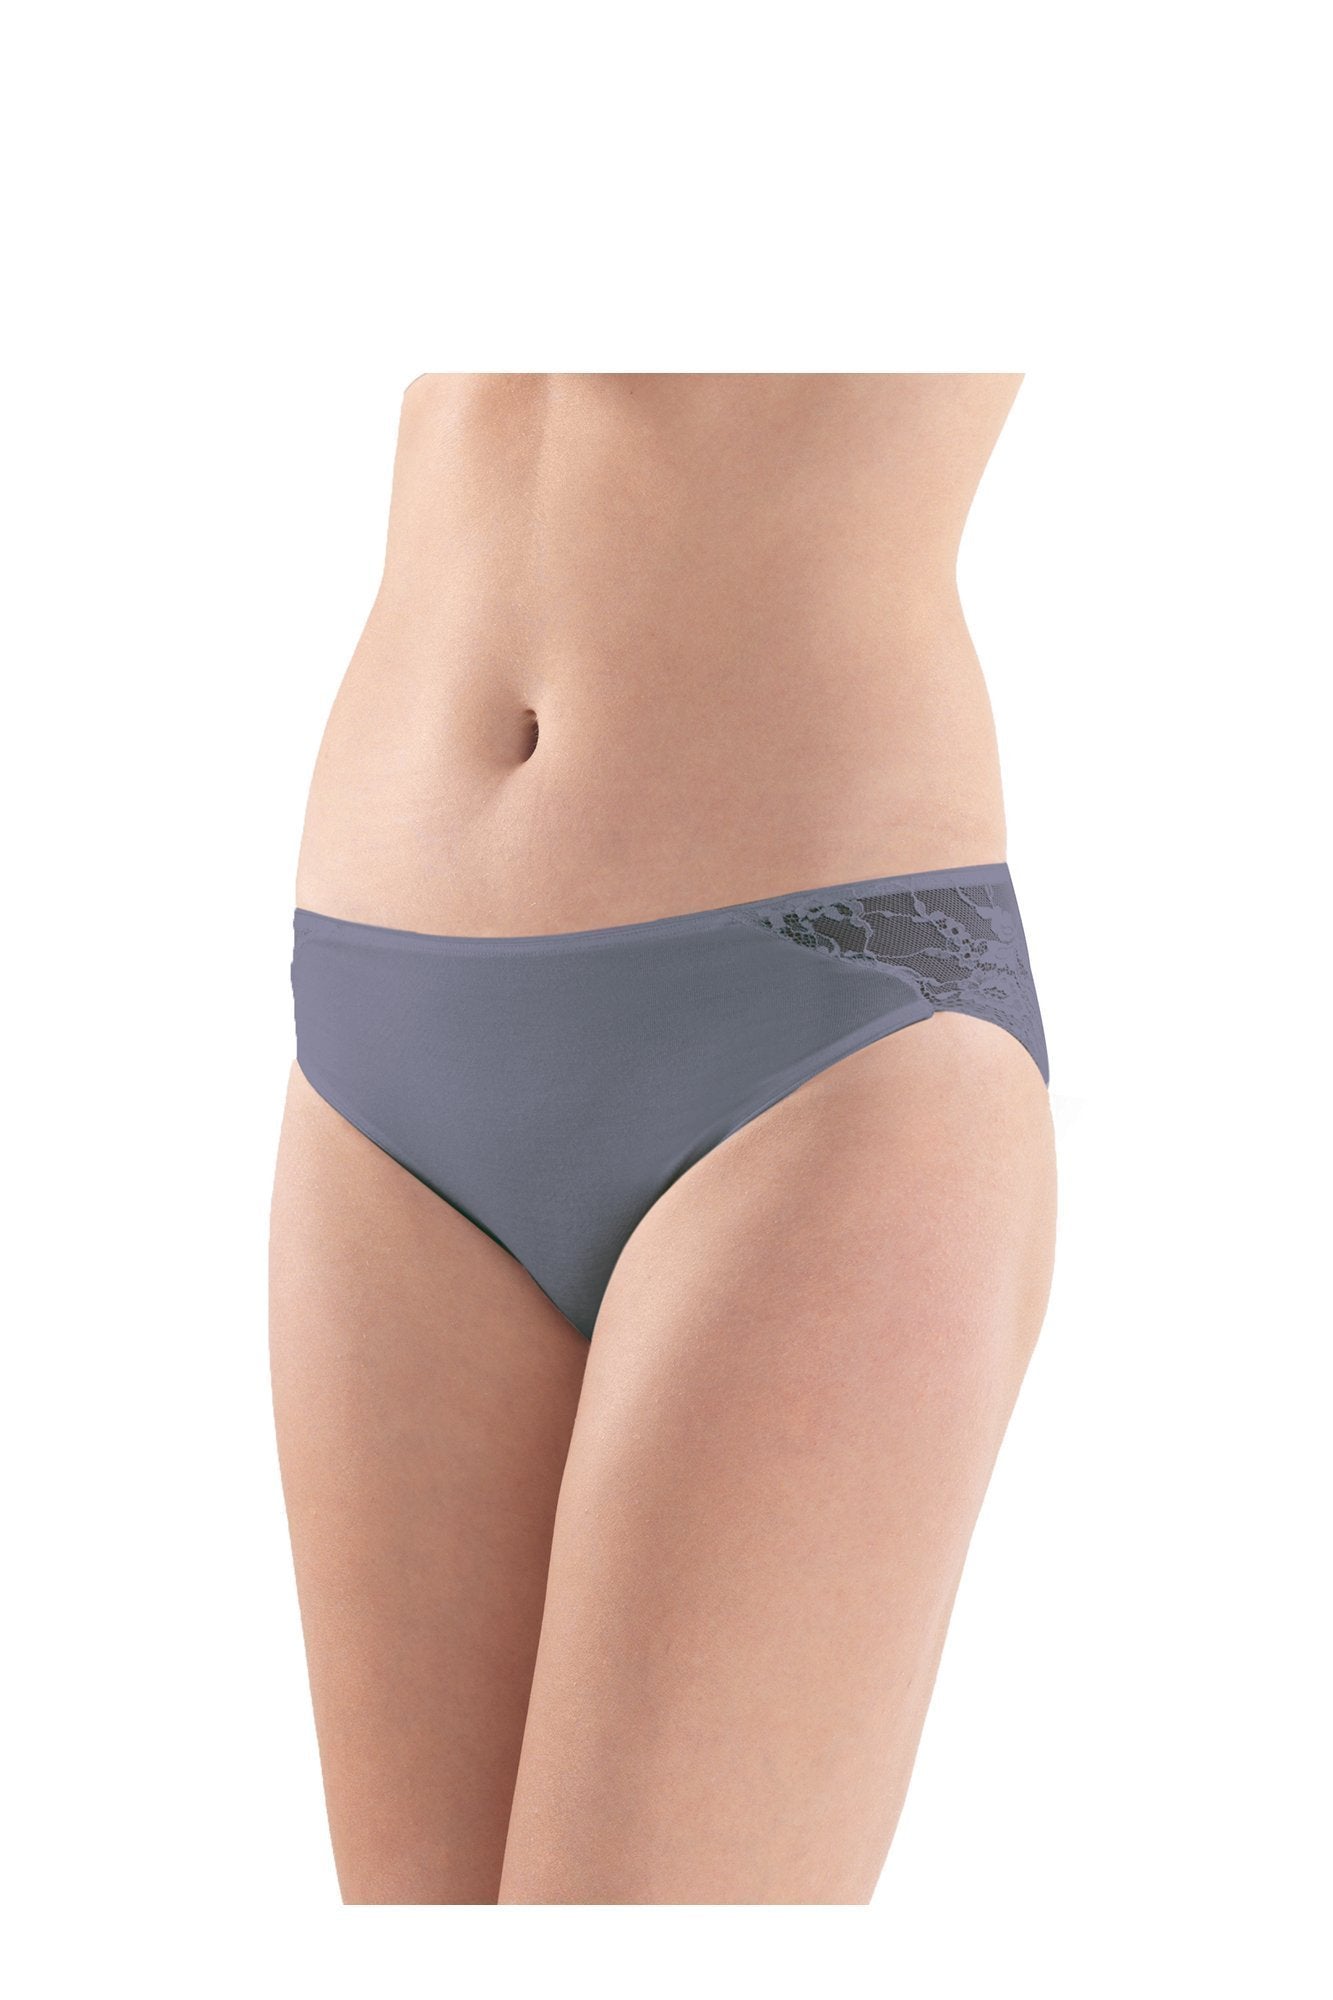 Ladies' Slip-1349 underwear blackspade 011 Mink L 94% Modal 6% Elastane